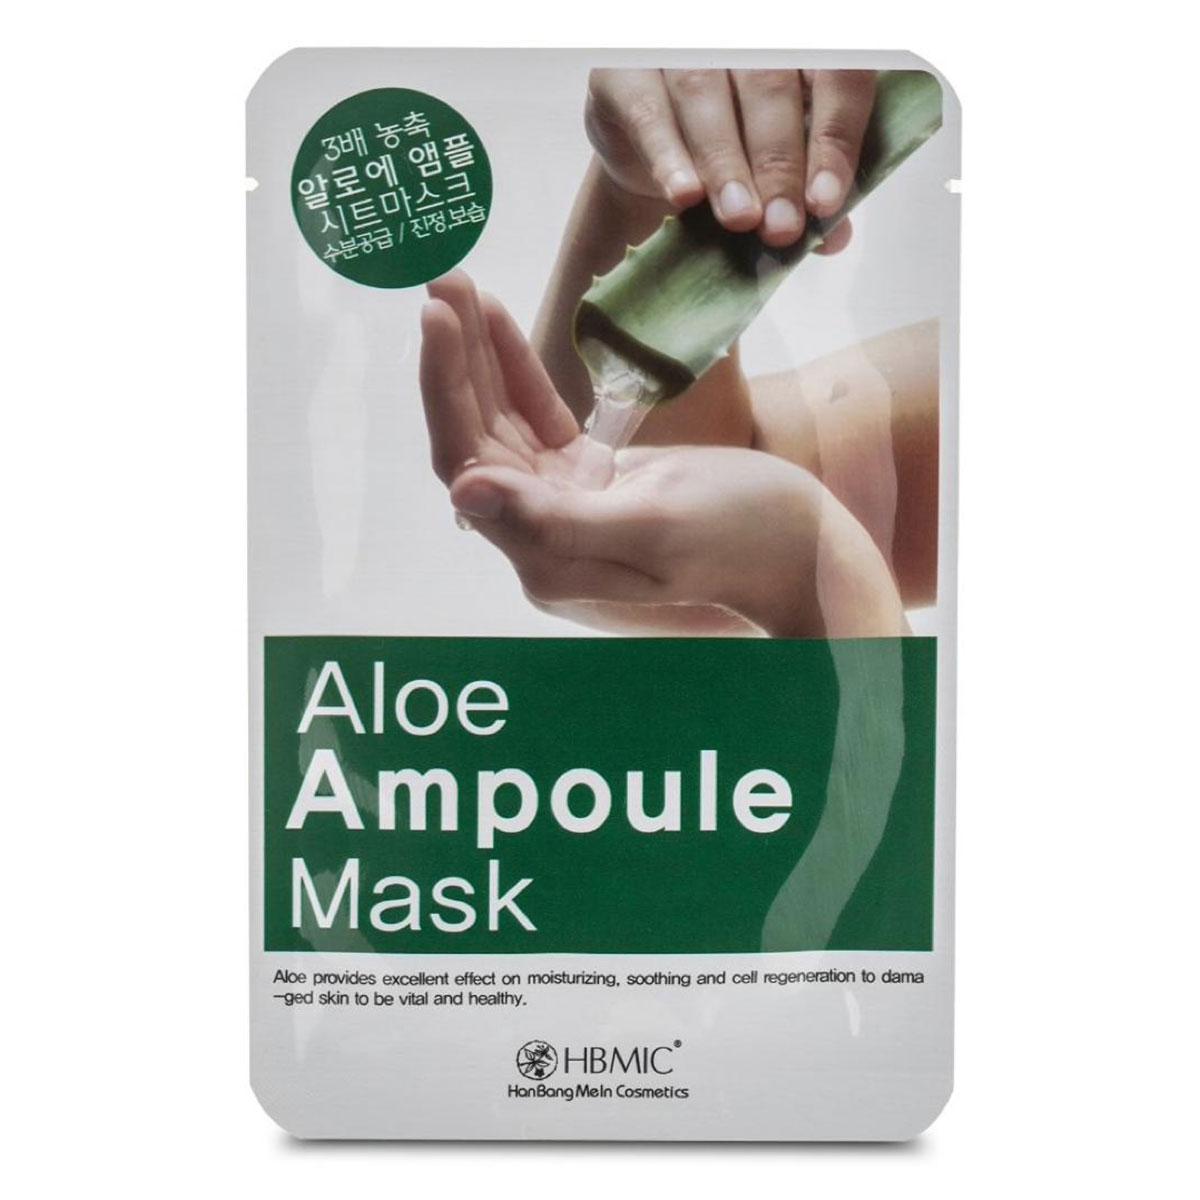 ماسک آلوئه ورا کره اى  - Aloe ampoule mask sheet